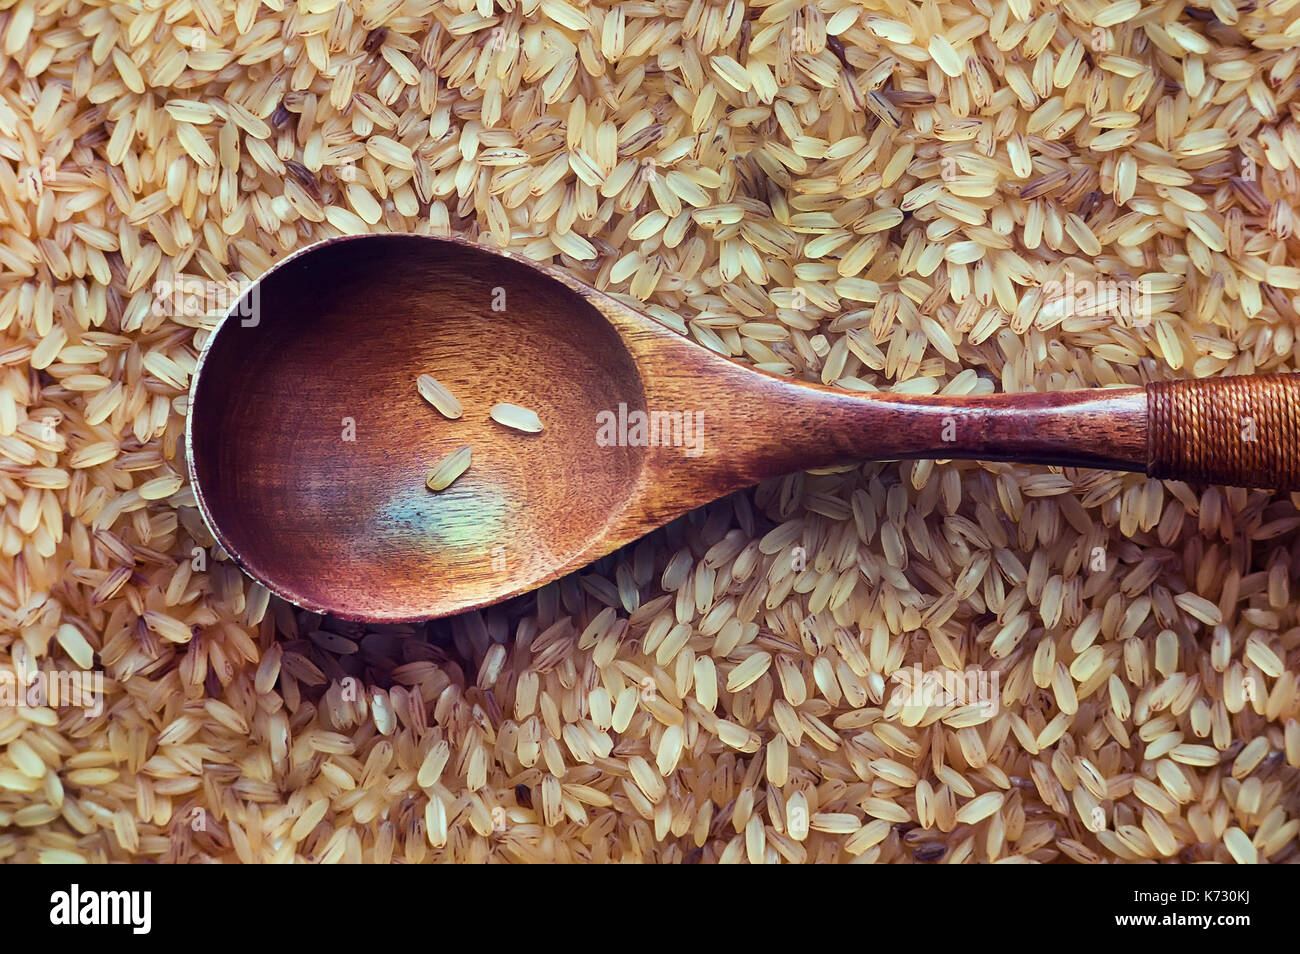 Essen Hintergrund. brauner Reis in einem Holzlöffel close-up. Ansicht von oben. Billige Lebensmittel für die Hungernden und armen Regionen Südostasiens. Stockfoto